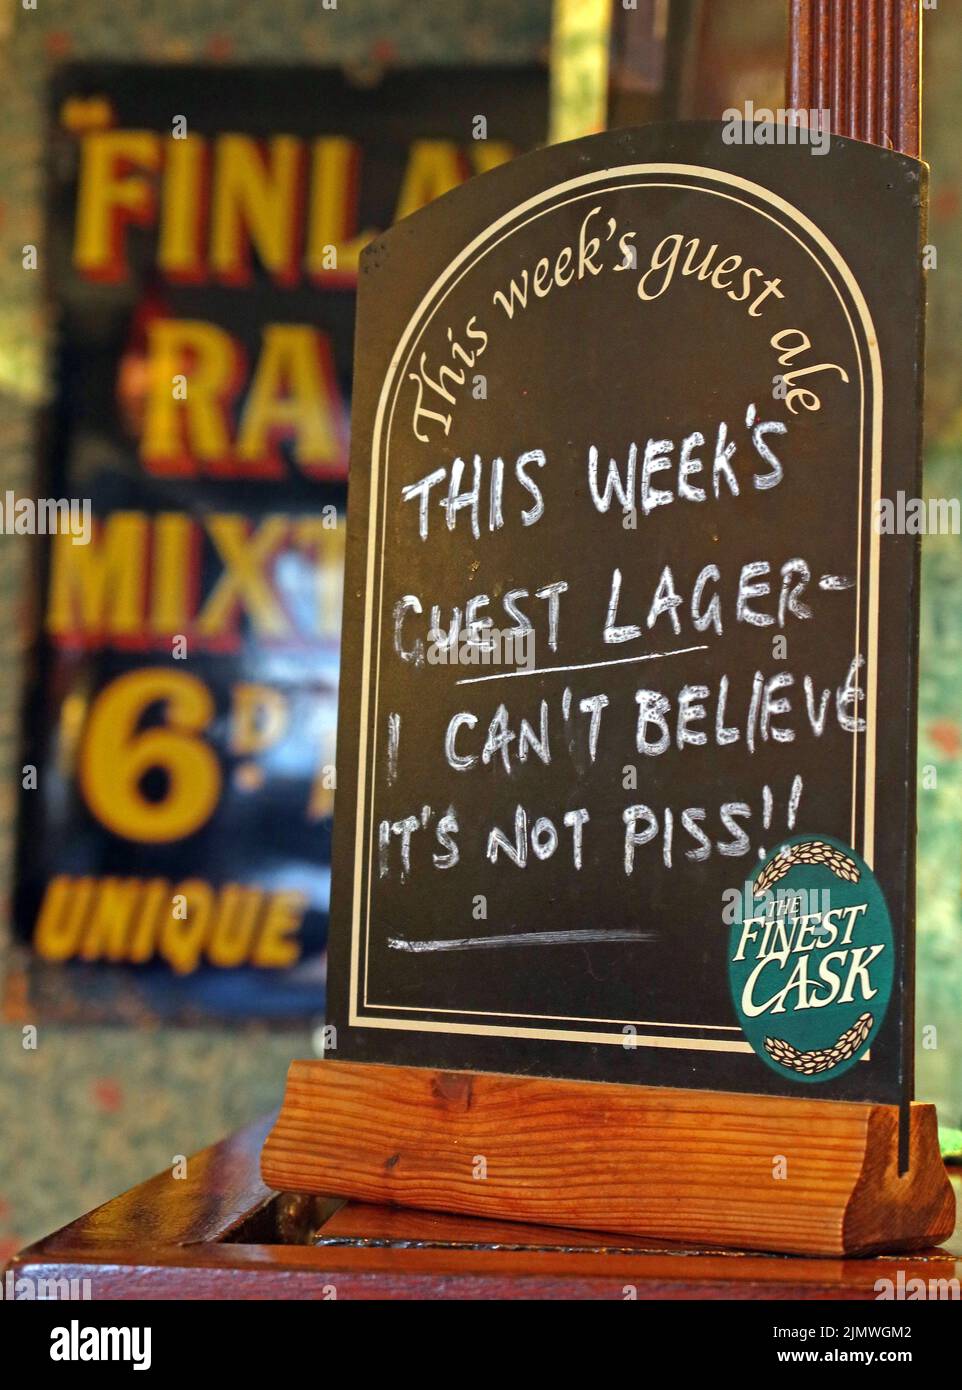 Firma sul bar a Albion, Park Road, Chester, Cheshire, Inghilterra, UK - questa settimana ospite lager, non credo che il suo non piss Foto Stock